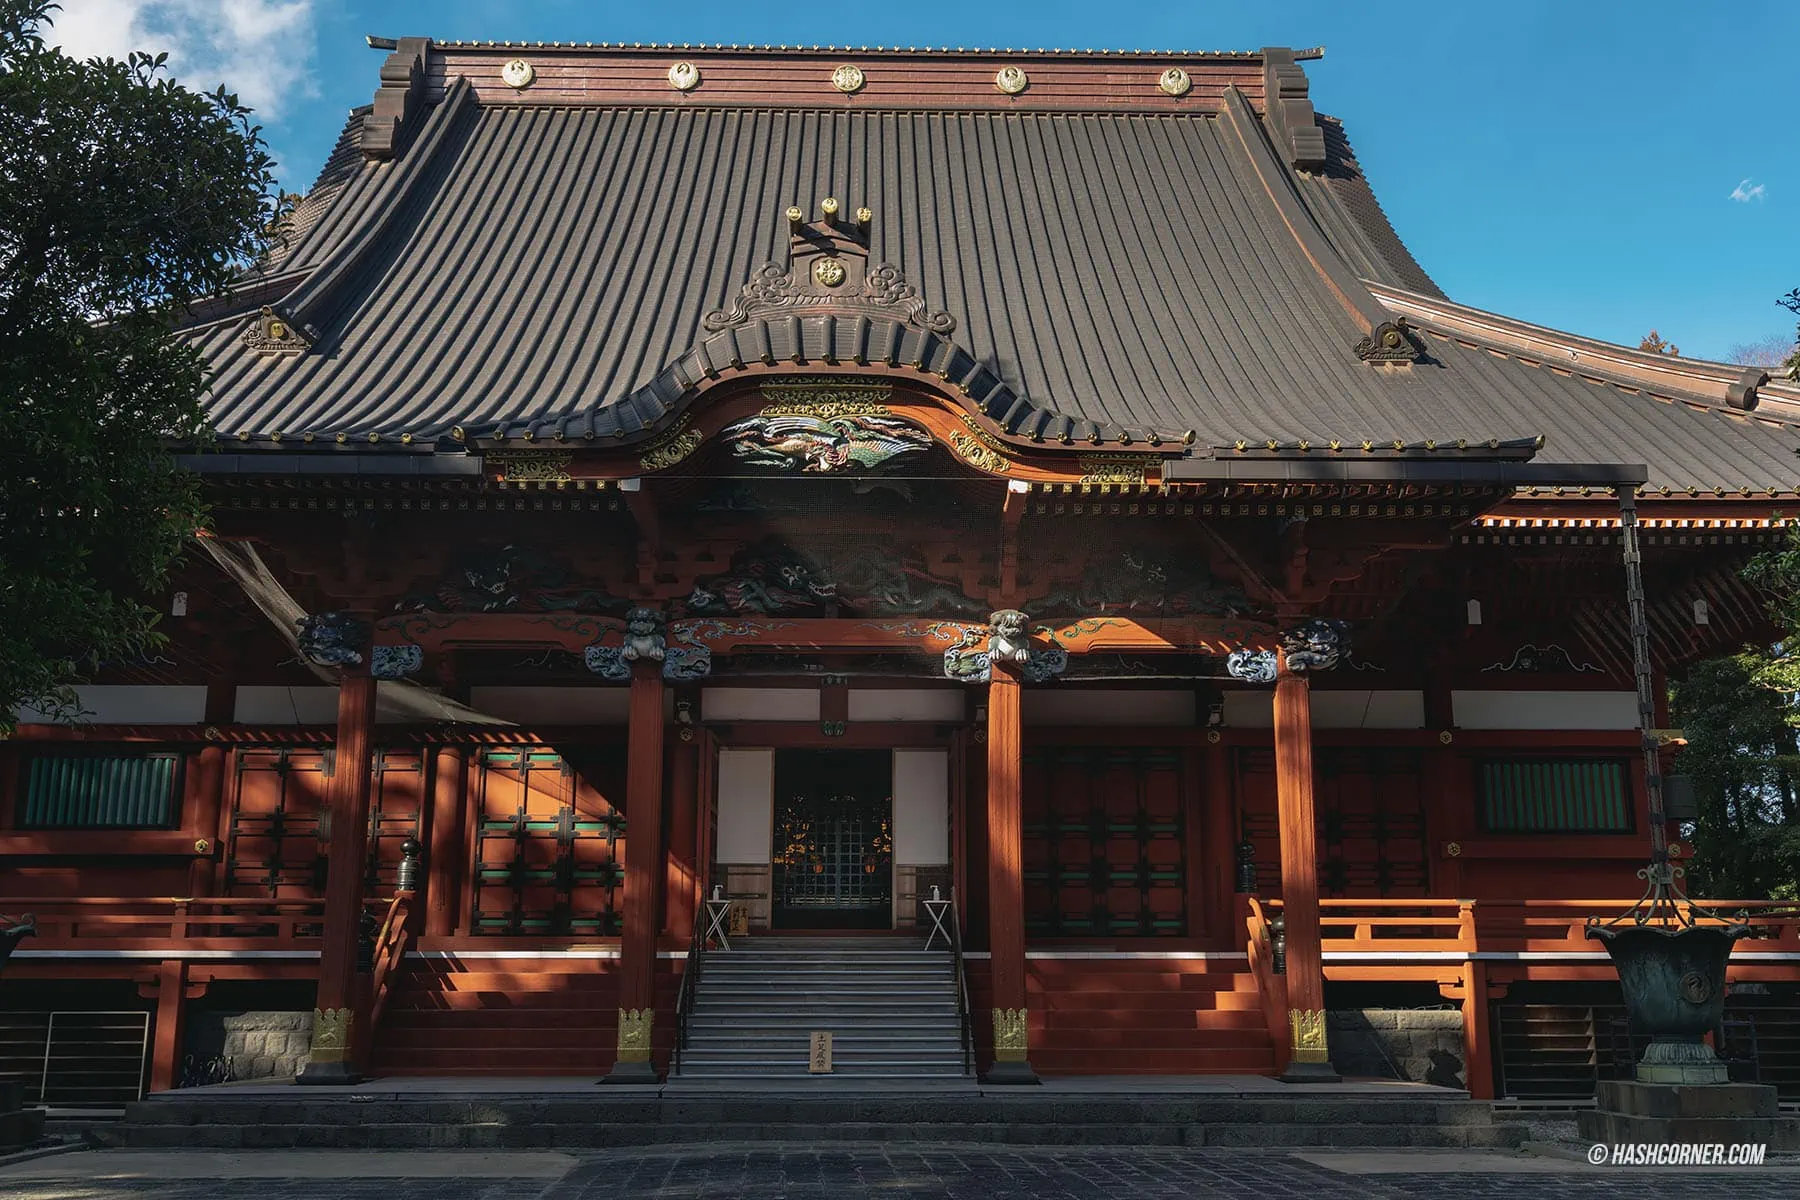 รีวิว วัดไทเซคิจิ (Taisekiji Temple) x ชิซึโอกะ วัดเก่าแก่วิวฟูจิซังที่หลายคนยังไม่รู้จัก